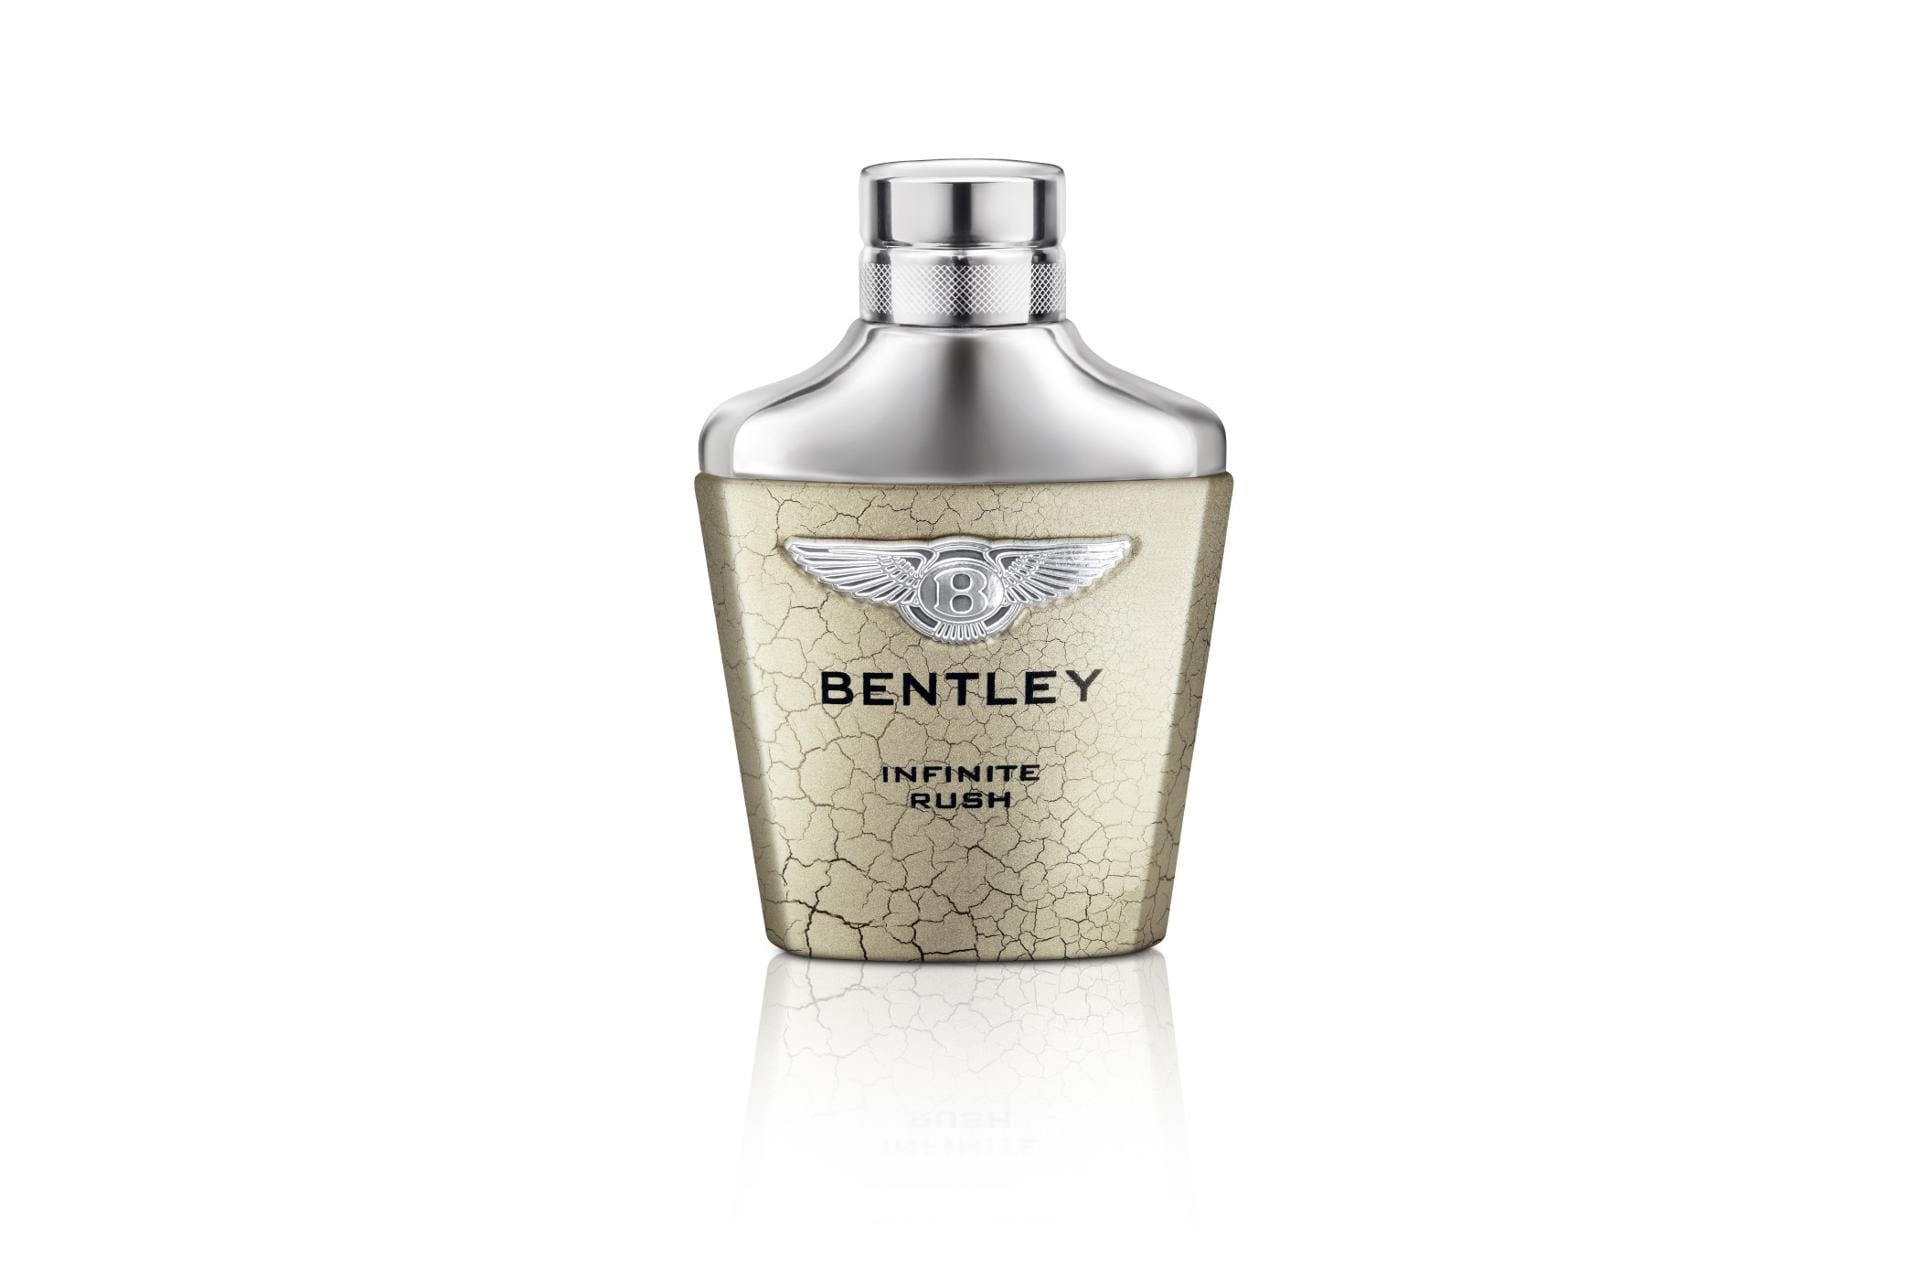 Anders als die Traumautos aus England ist das Parfum Bentley Infinite Rush für Normalverdiener auch noch erschwinglich. 59 Euro kostet derzeit die 60-Milliliter-Flasche zum Aufsprühen.